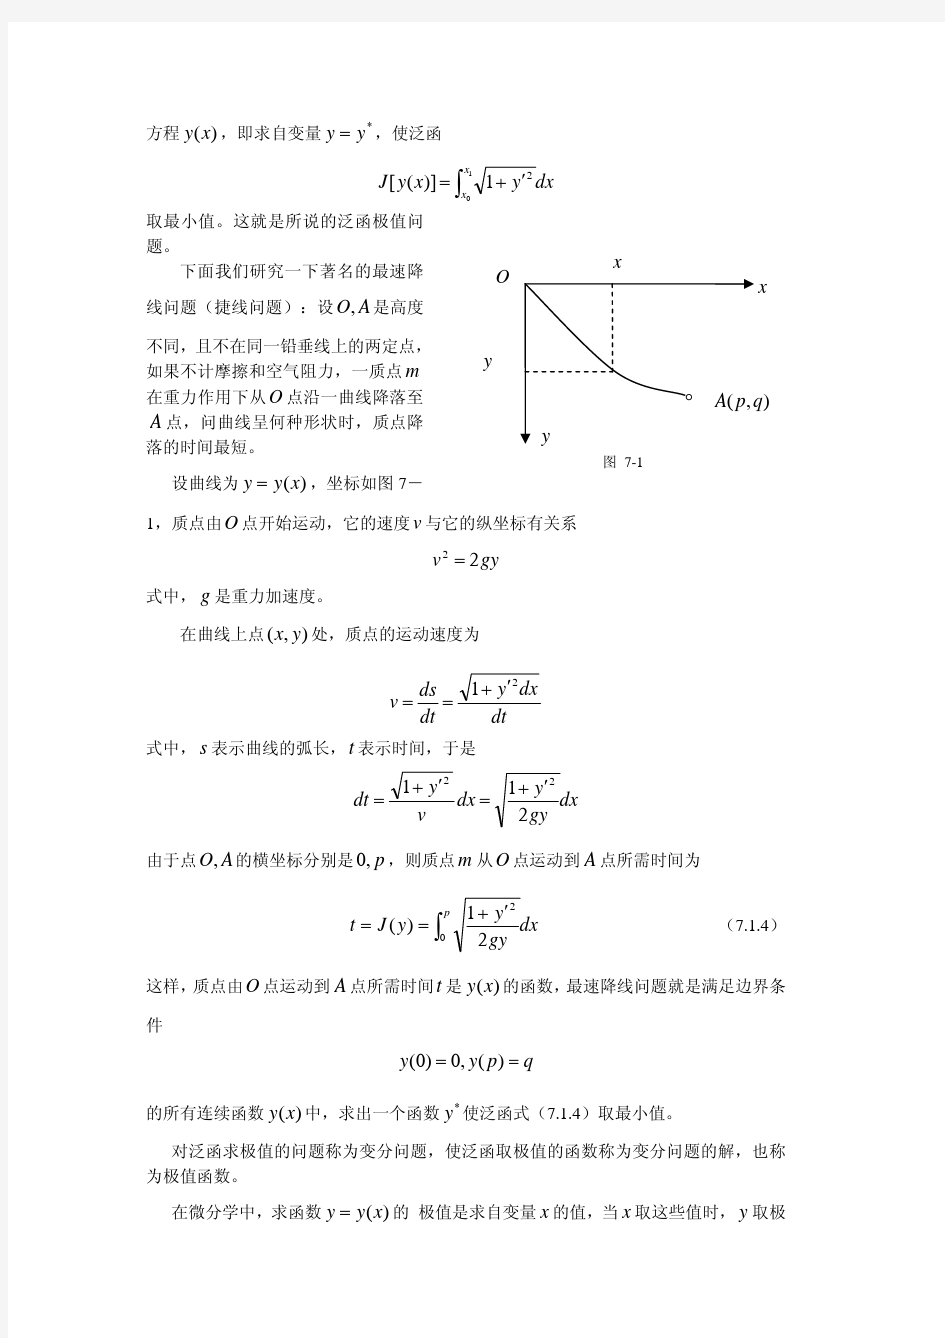 数学物理方程第七章_变分法及其应用